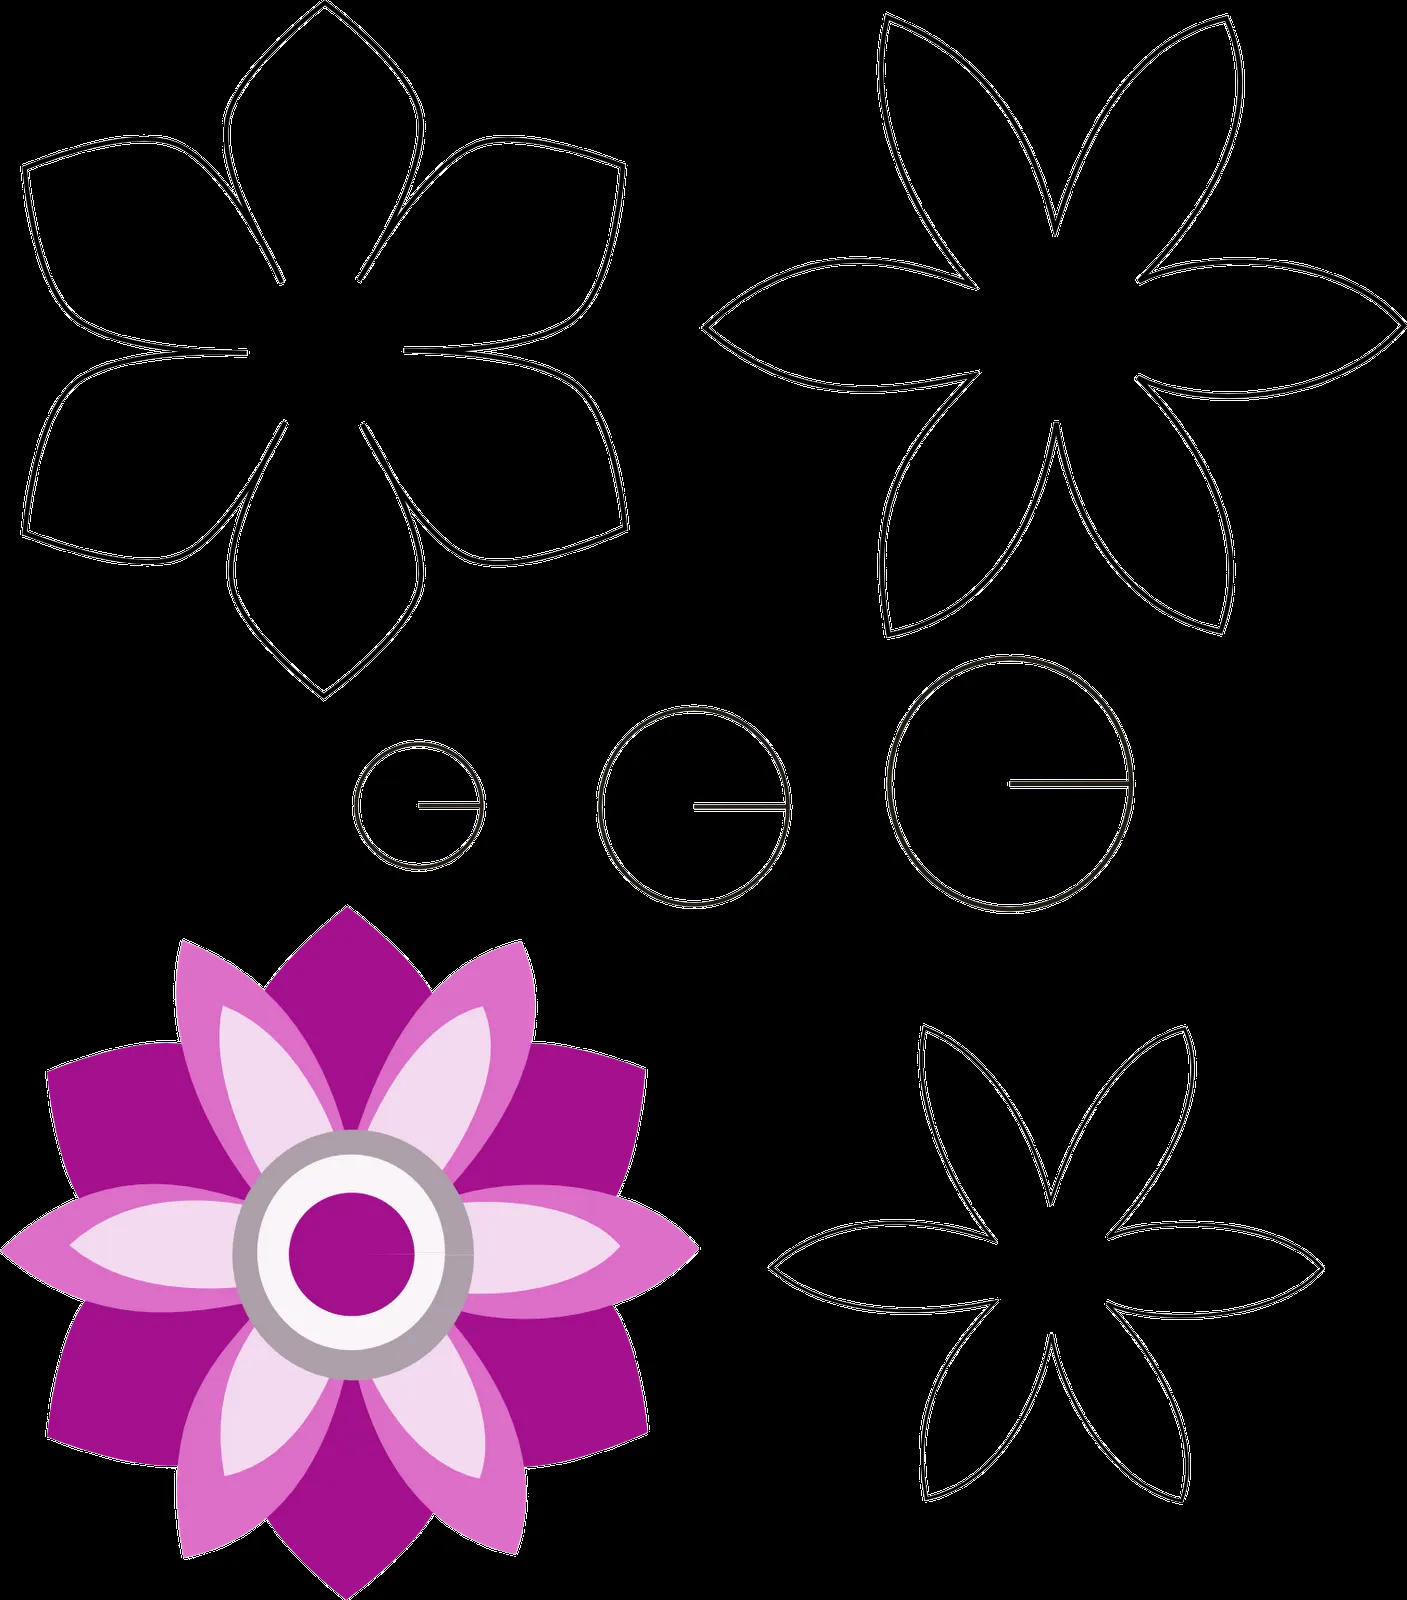 patrones de flores de fieltro - Buscar con Google | Fieltro ...